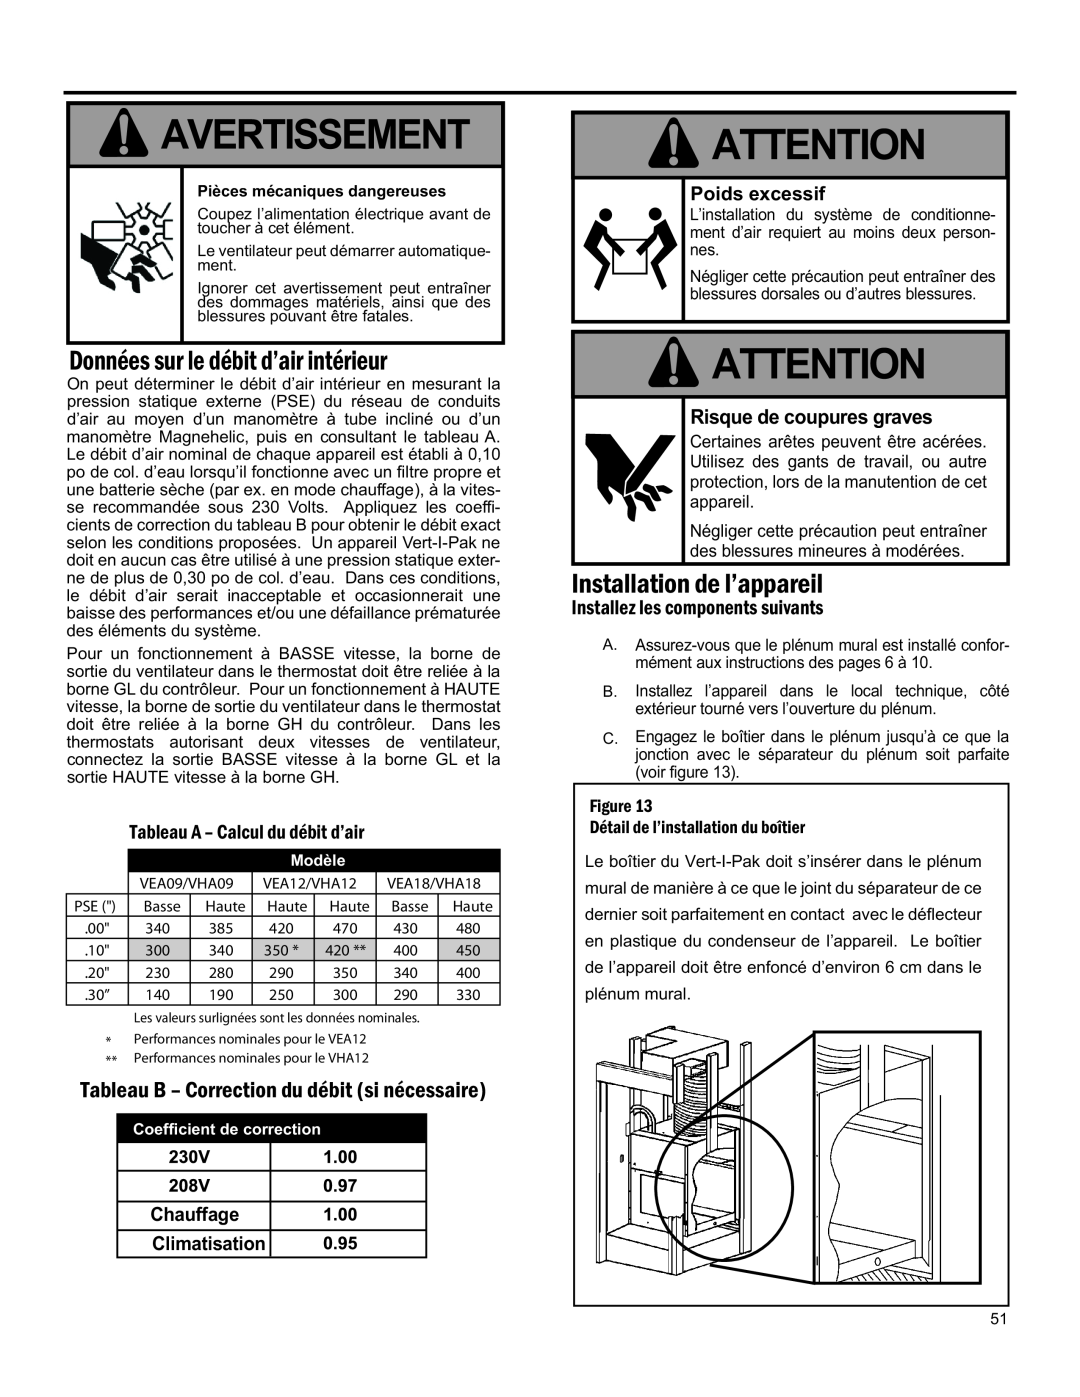 Friedrich 920-075-13 (1-11) Avertissement, Données Sur Le Débit D’Air Intérieur, Chauffage Climatisation, Poids excessif 